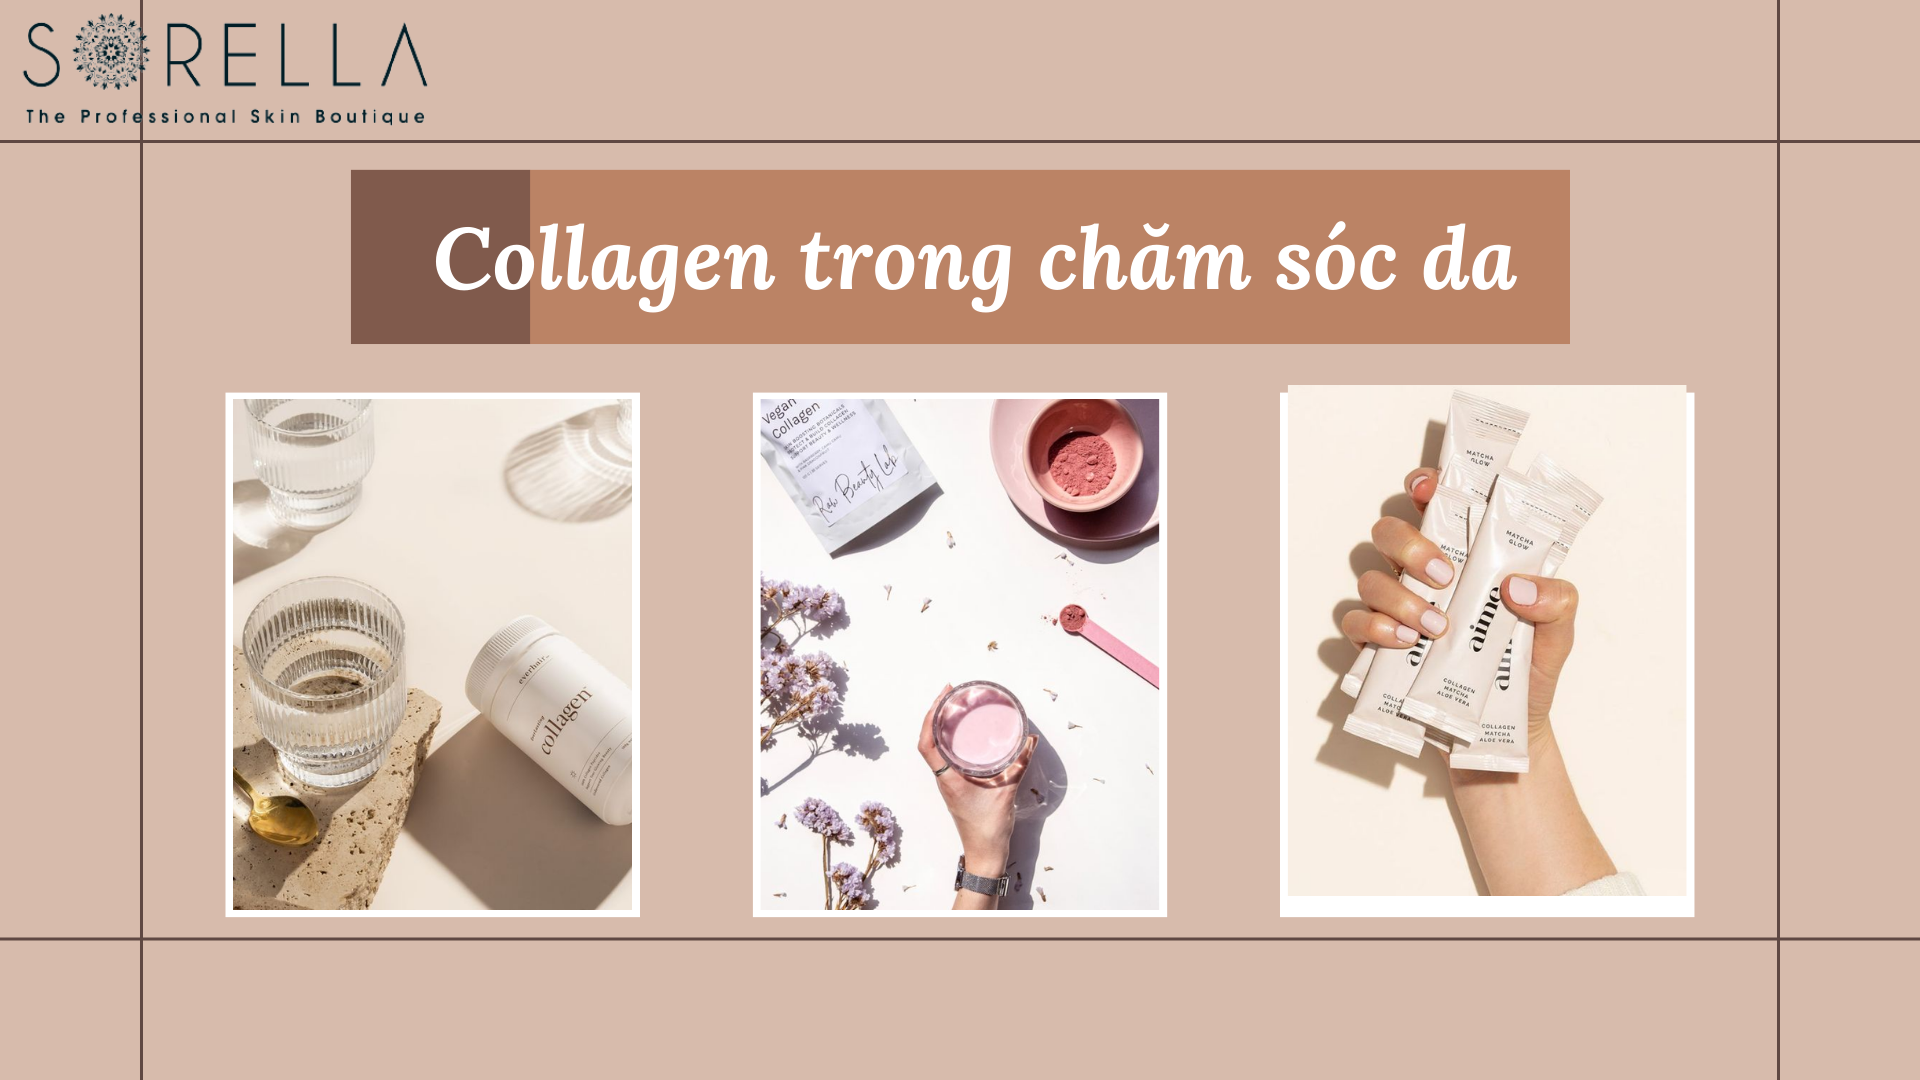 Collagen trong chăm sóc da